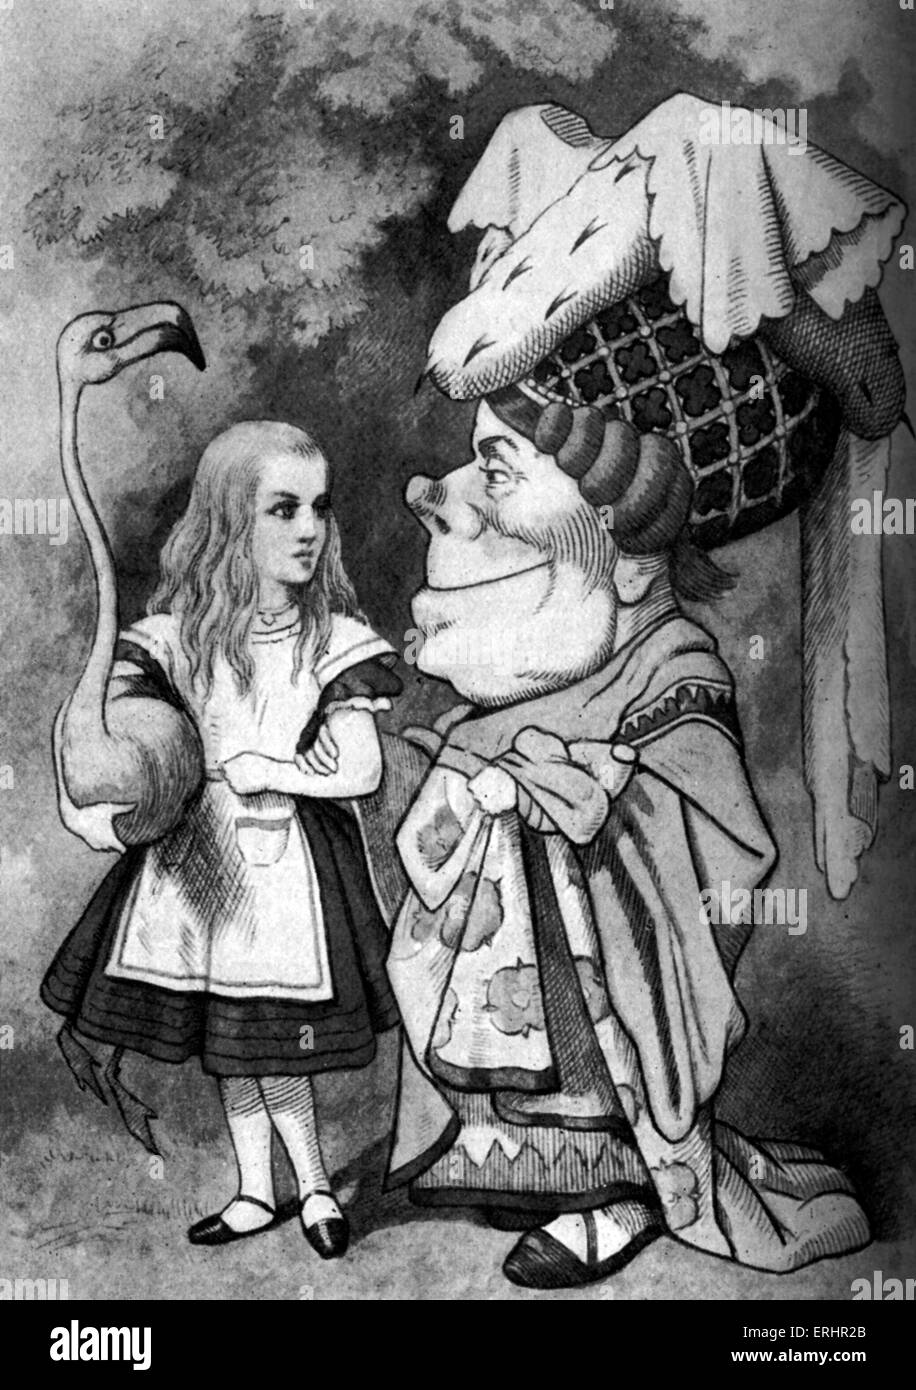 Alice au Pays des merveilles - avec la Duchesse. À partir de 'Alice's Adventures in Wonderland" by Lewis Carroll. LC : auteur anglais, 27 janvier 1832 - 14 janvier 1898. Illustration par John Tenniel le : 28 février 1820 - 25 février 1914. Banque D'Images